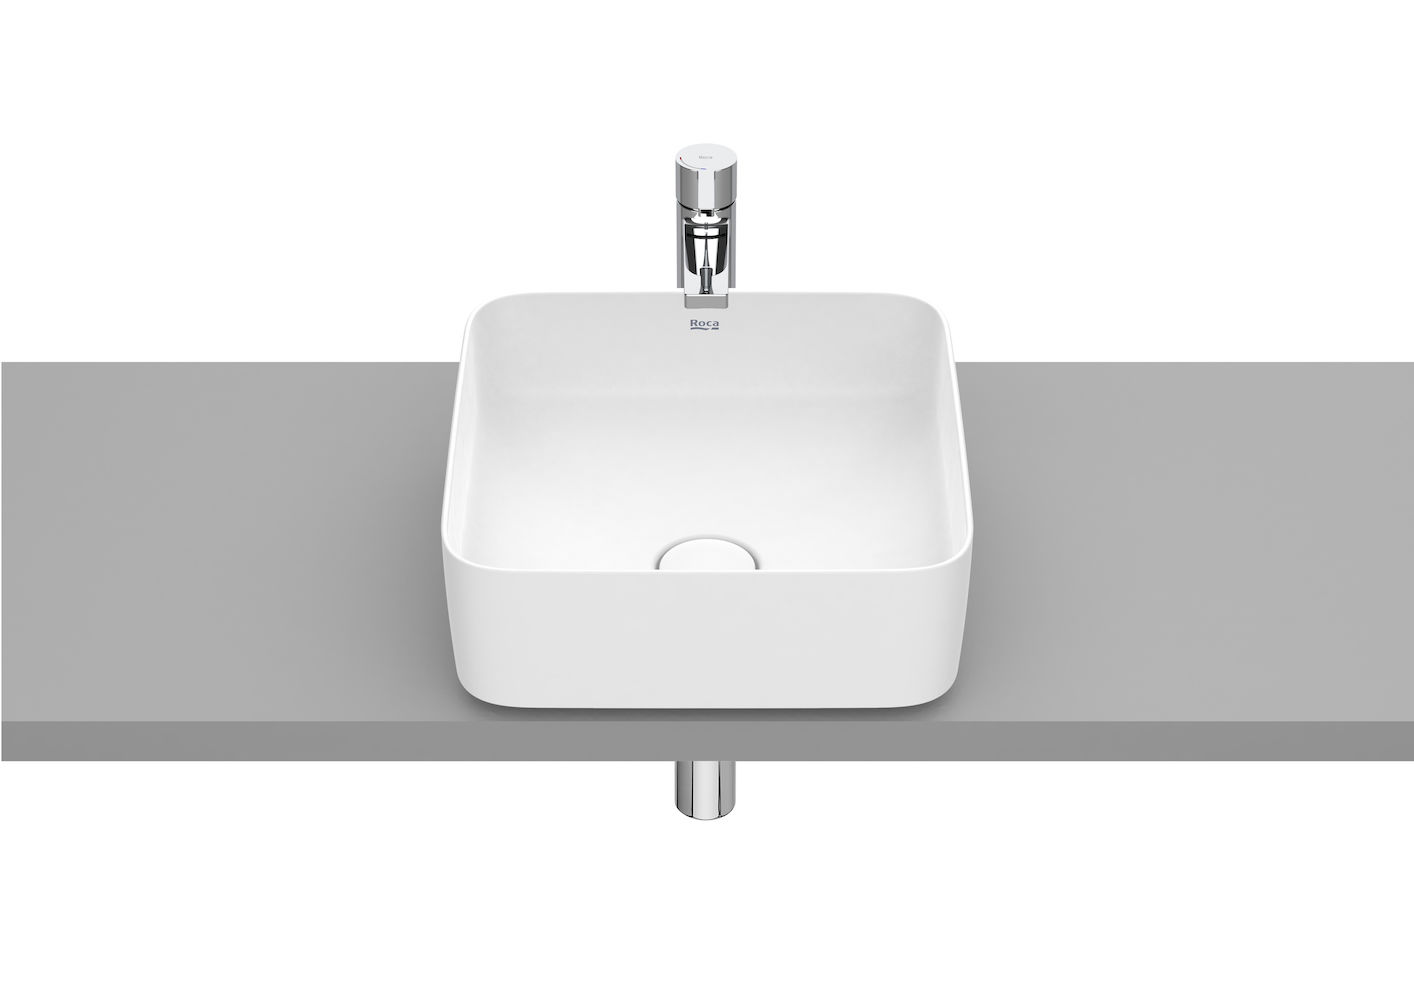 SQUARE - Over countertop FINECERAMIC® basin-Matte White 370 x 370 x 140 mm